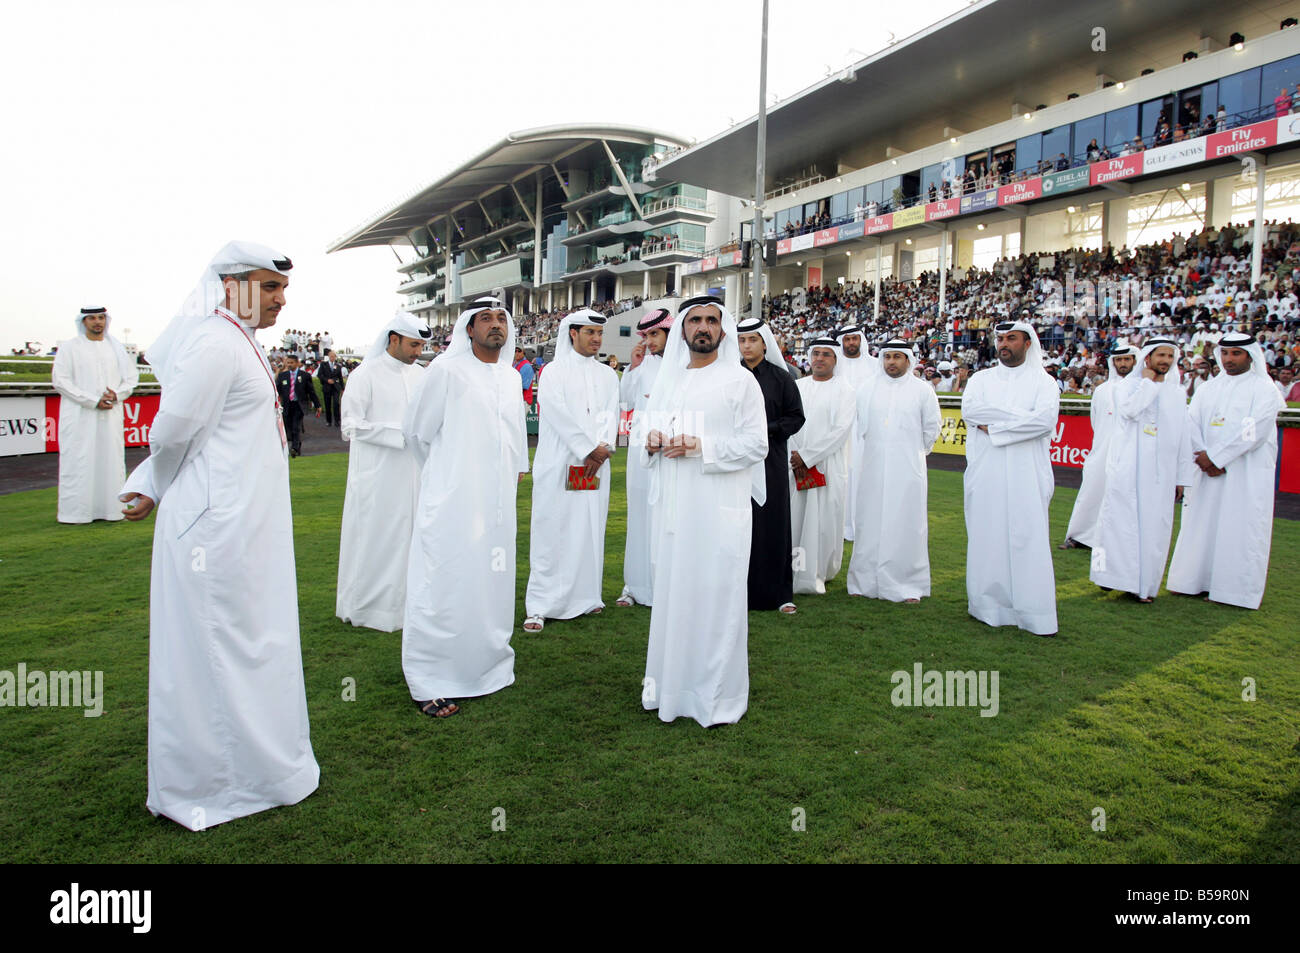 Un groupe d'hommes arabes, Sheikh Mohammed bin Rashid Al Maktoum parmi eux, Dubaï, Émirats Arabes Unis Banque D'Images